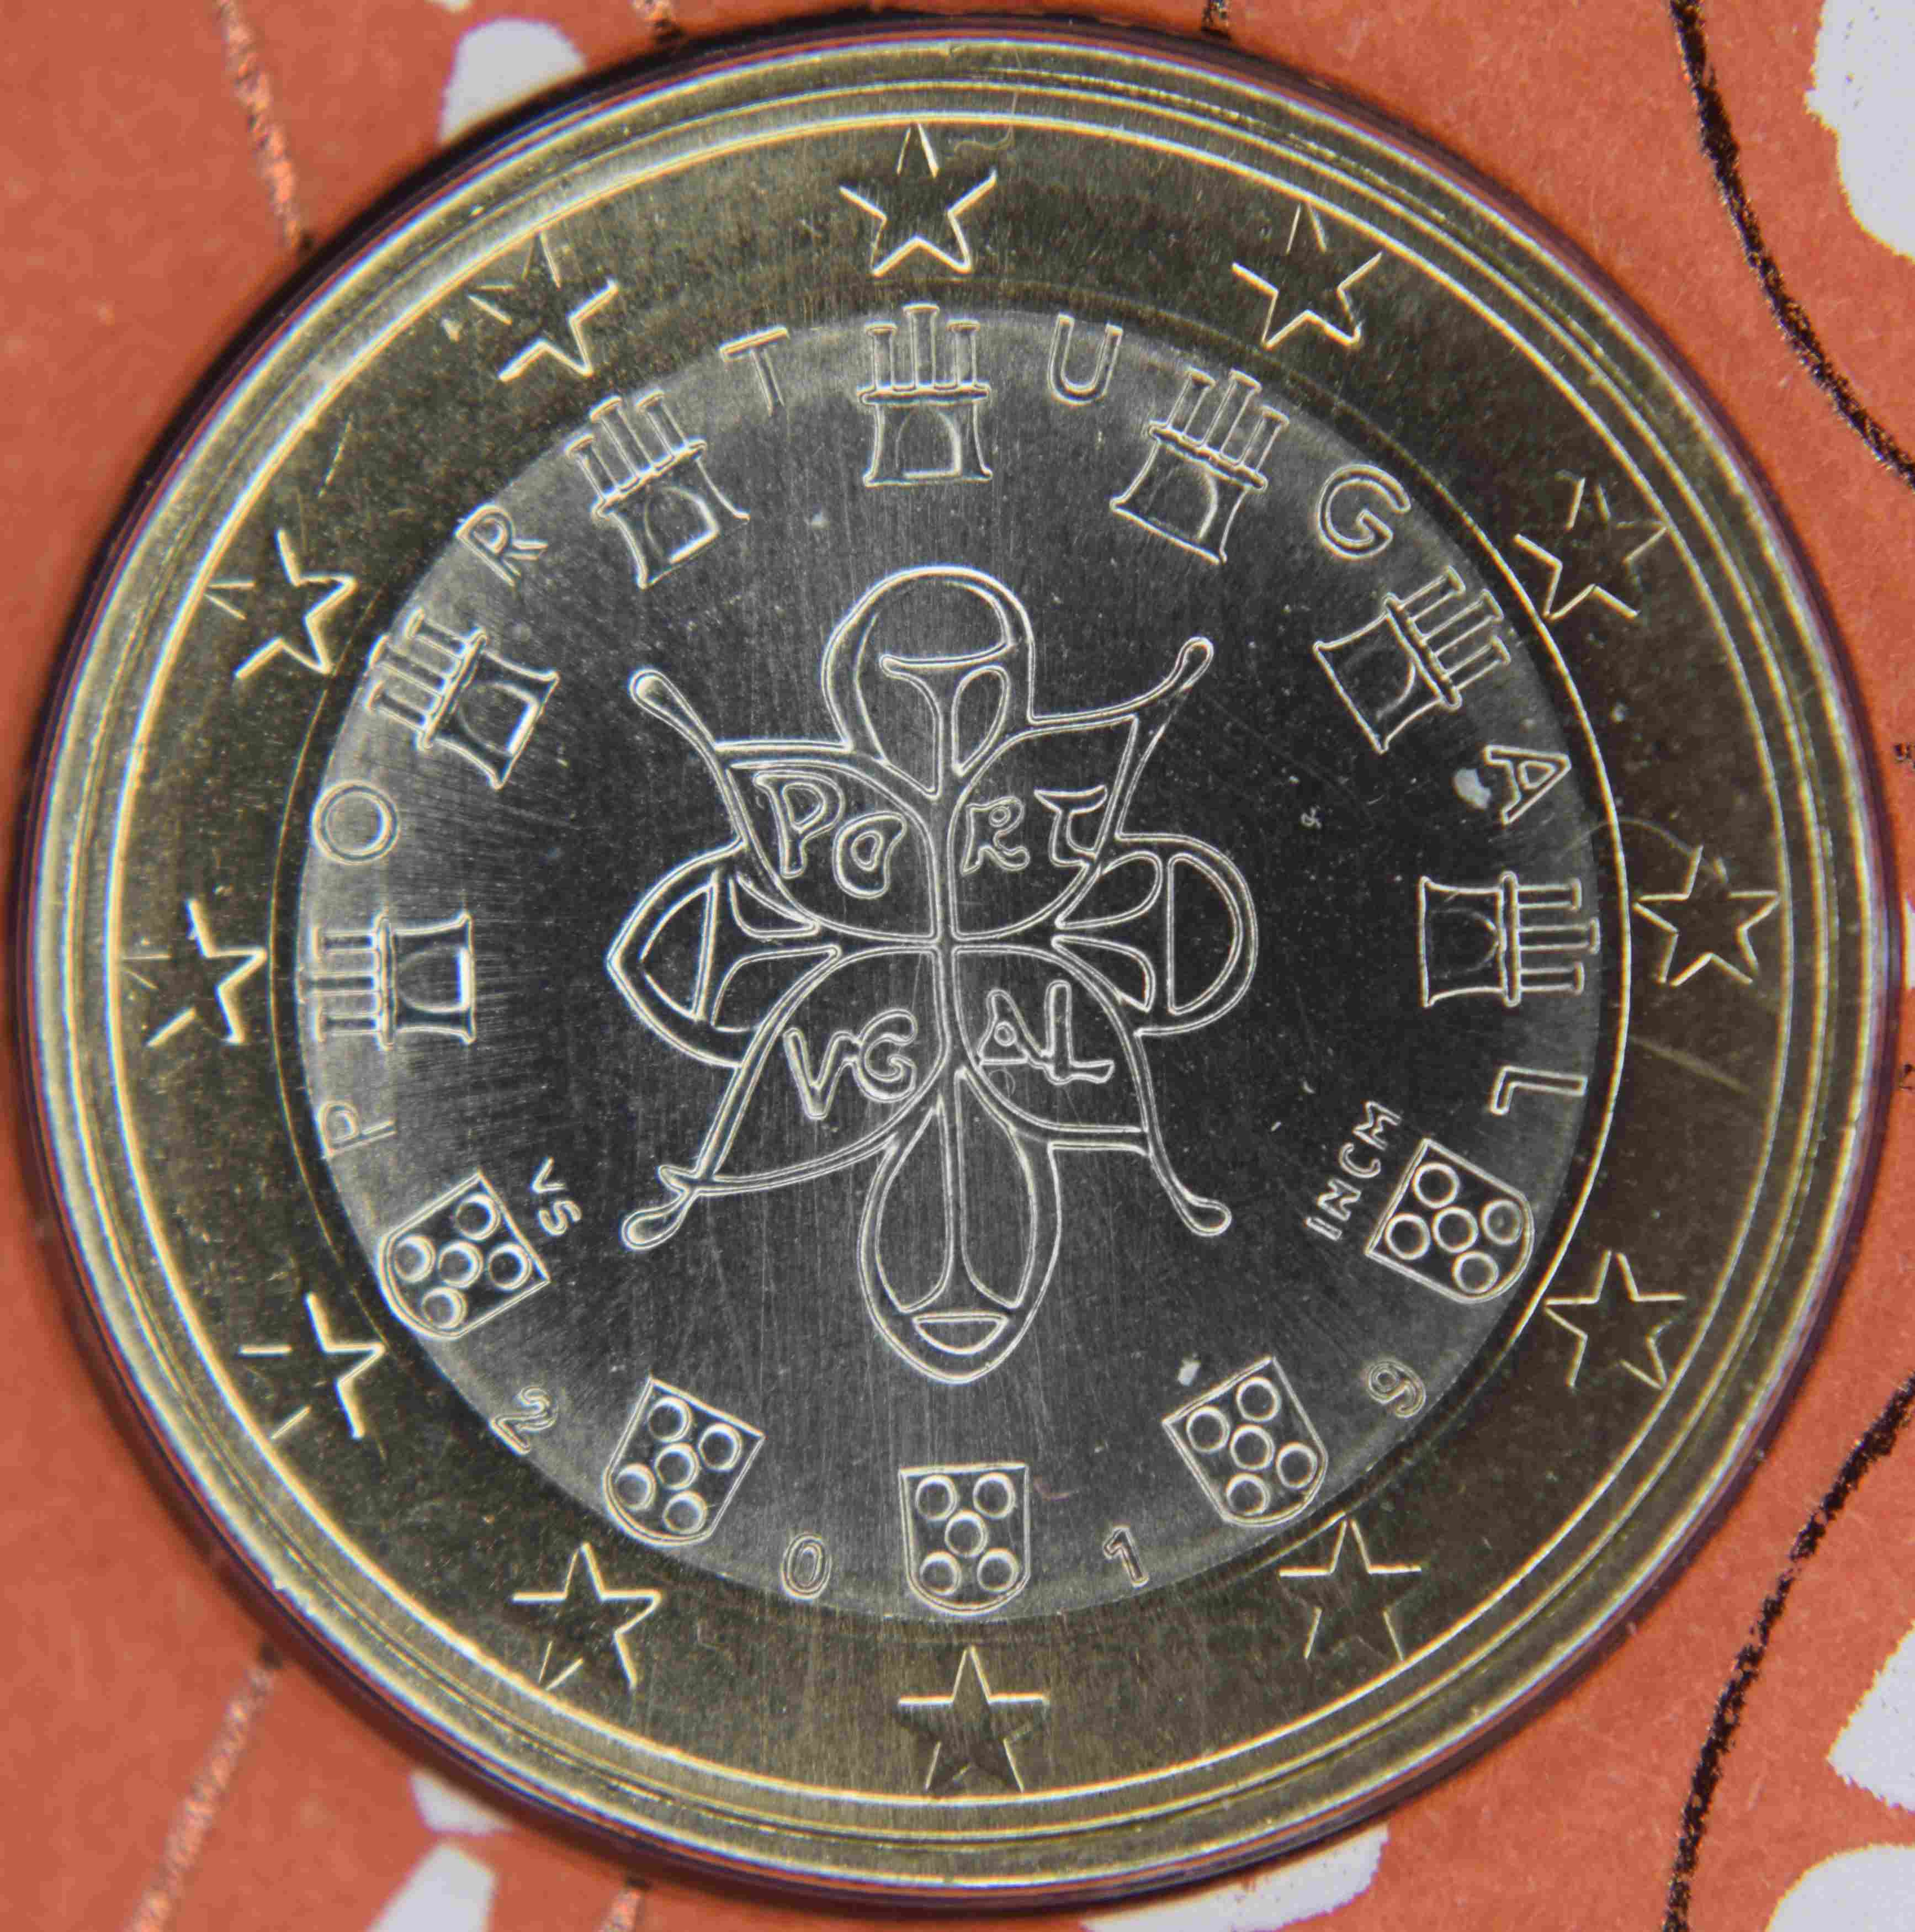 Portugal 1 Euro Münze 2019 - euro-muenzen.tv - Der Online Euromünzen